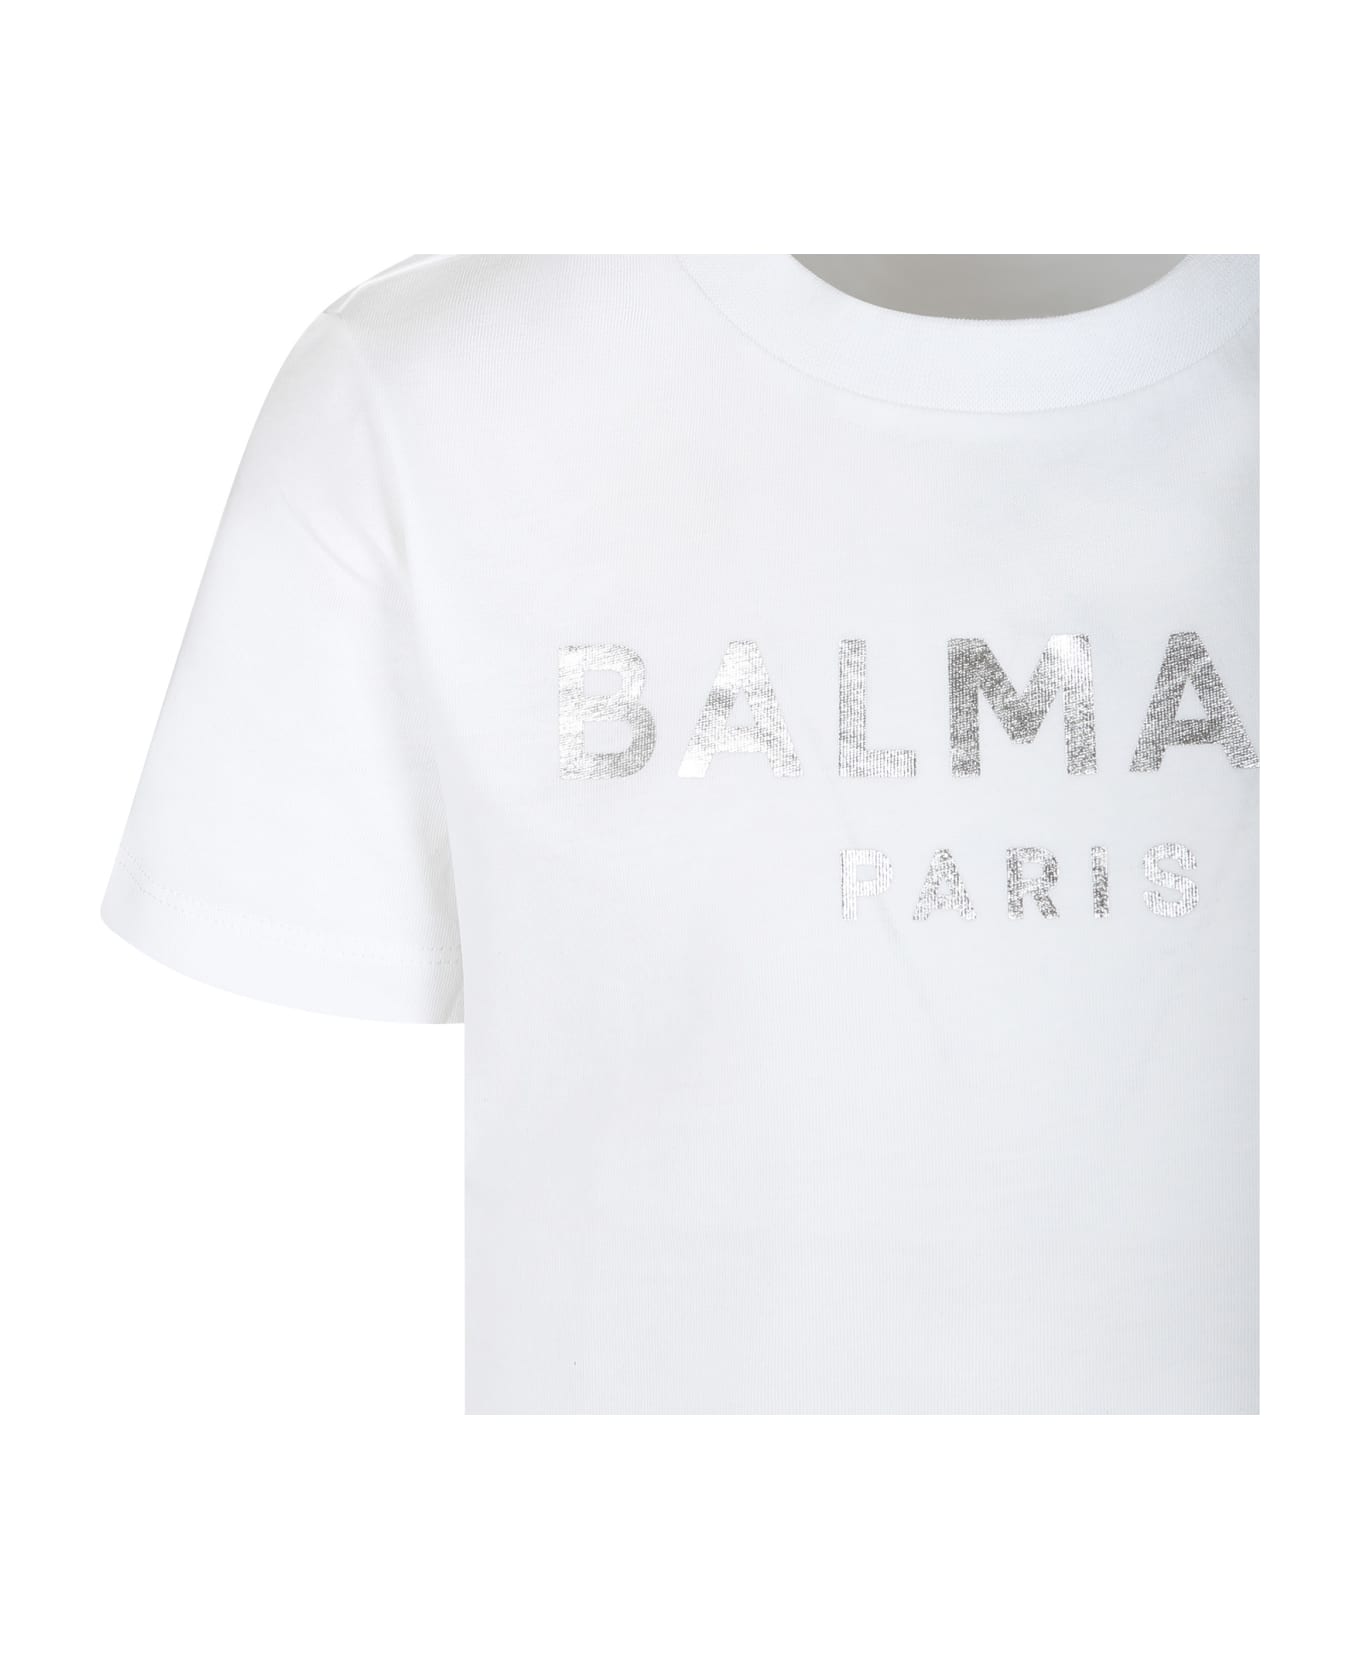 Balmain White T-shirt For Boy With Logo - White